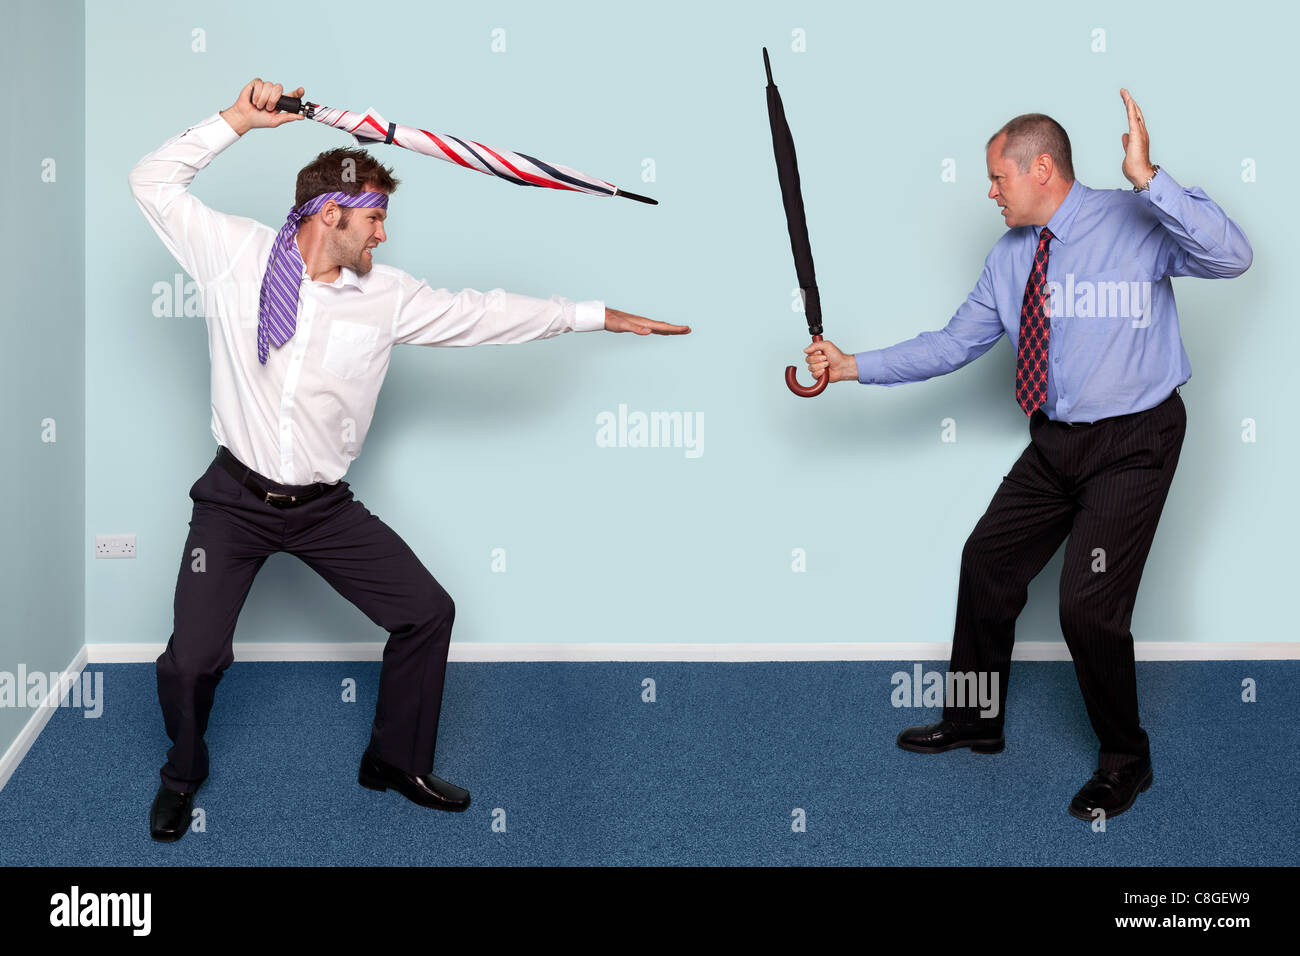 Foto von zwei Geschäftsleute mit einem Schwertkampf mit Sonnenschirmen, gutes Bild, Konflikt, Rivalität oder Meinungsverschiedenheiten zu vermitteln. Stockfoto